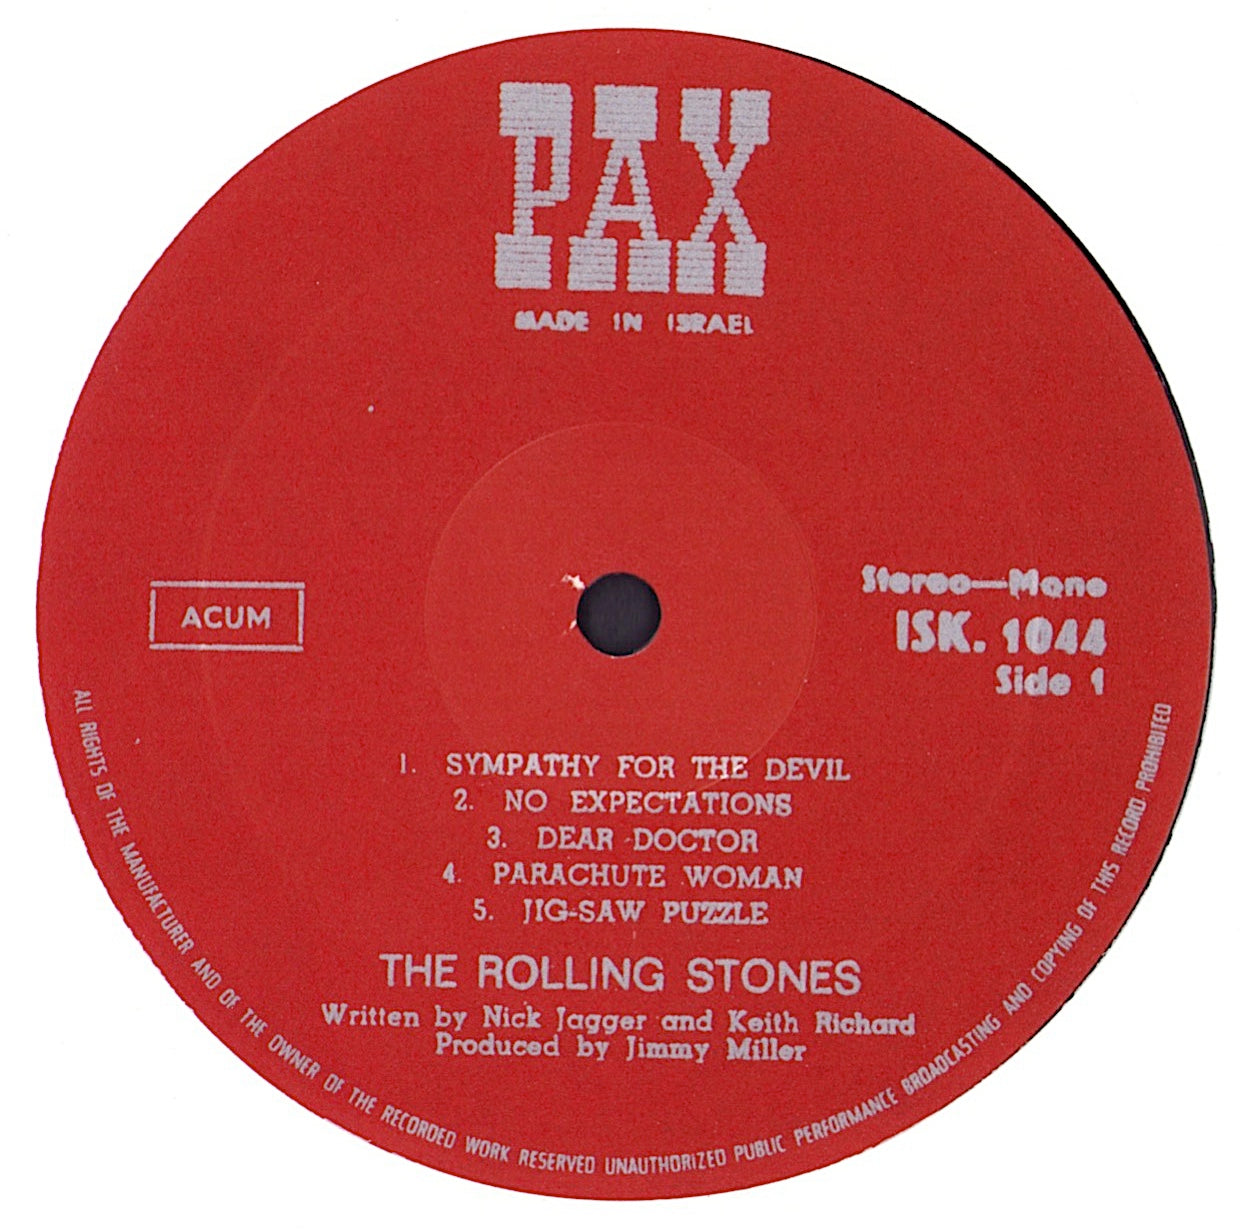 The Rolling Stones - Beggars Banquet Vinyl LP IS